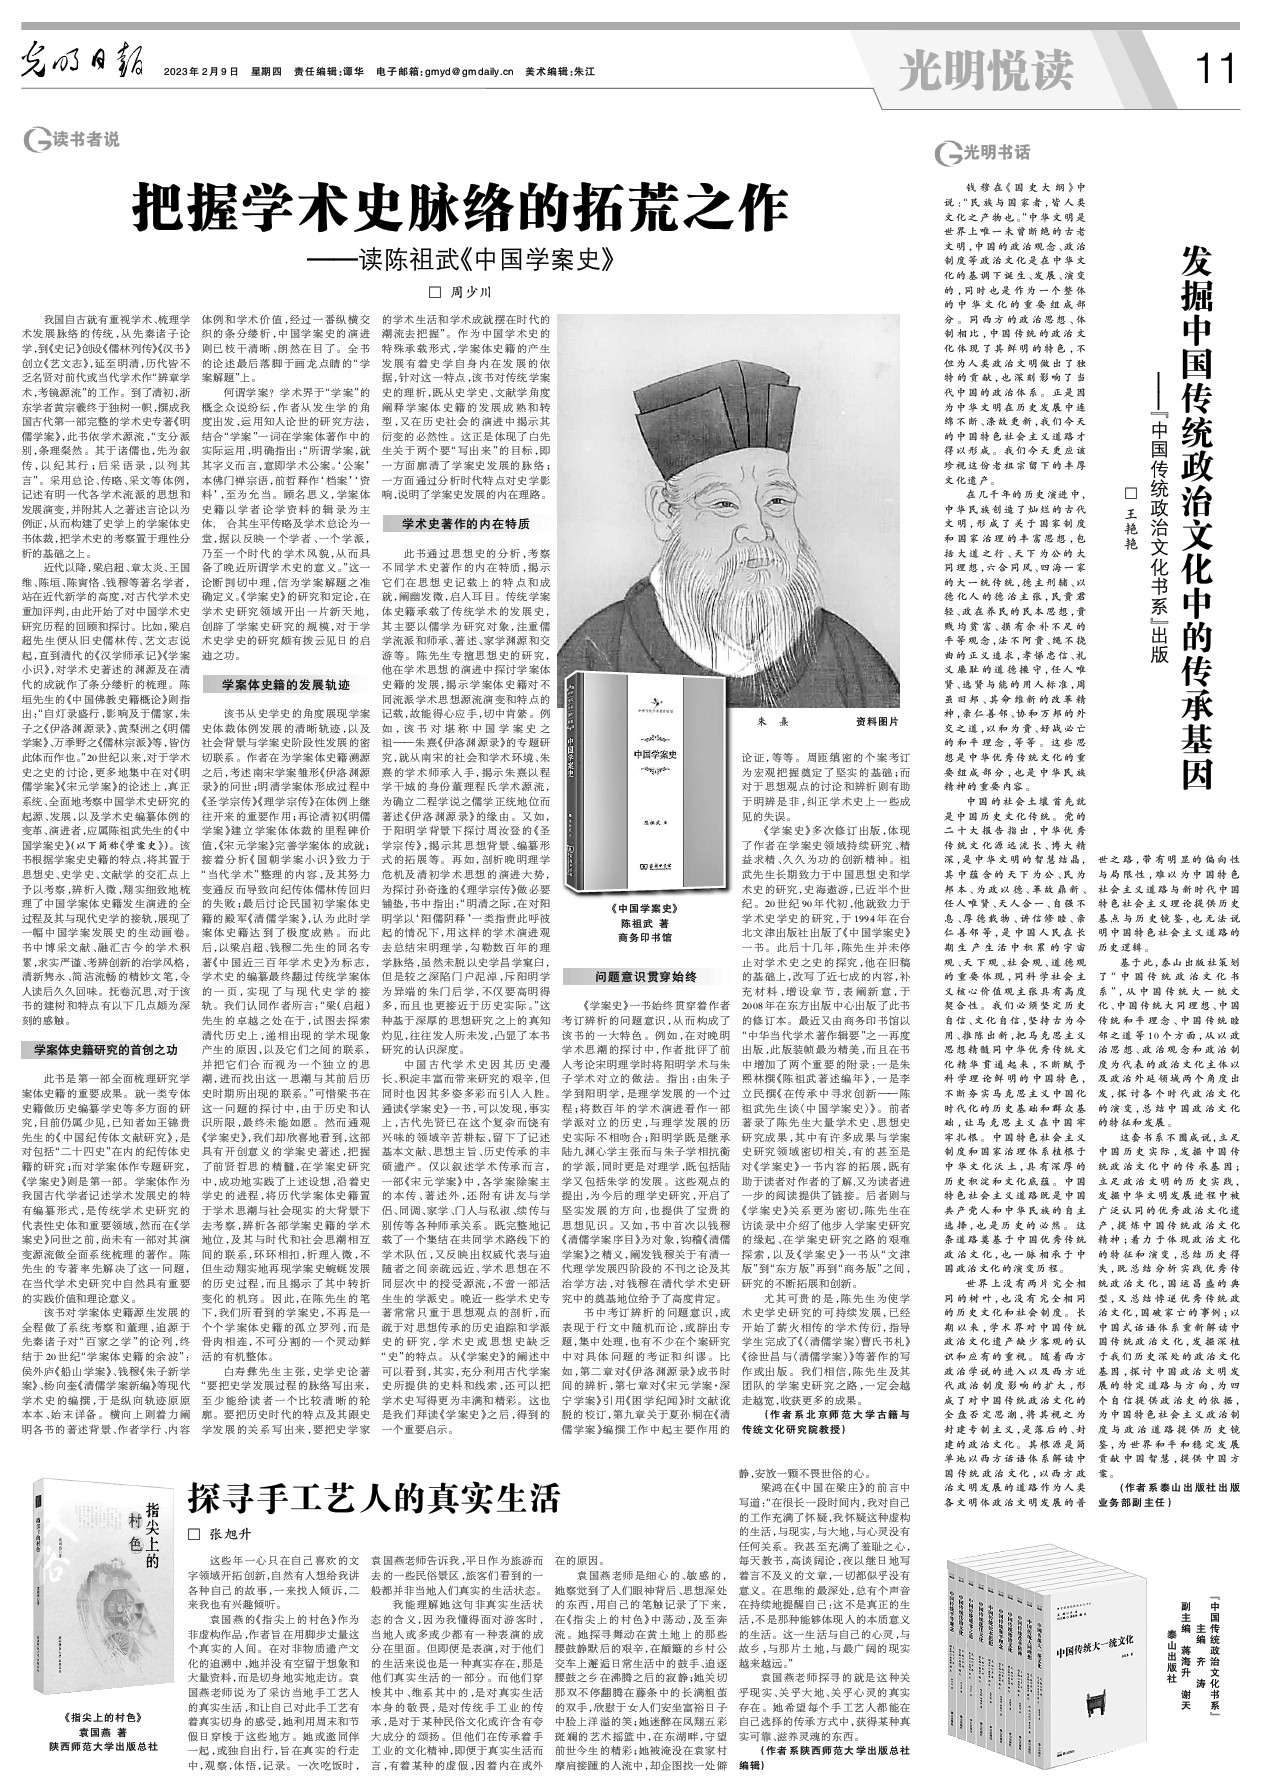 发掘中国传统政治文化中的传承基因-光明日报-光明网